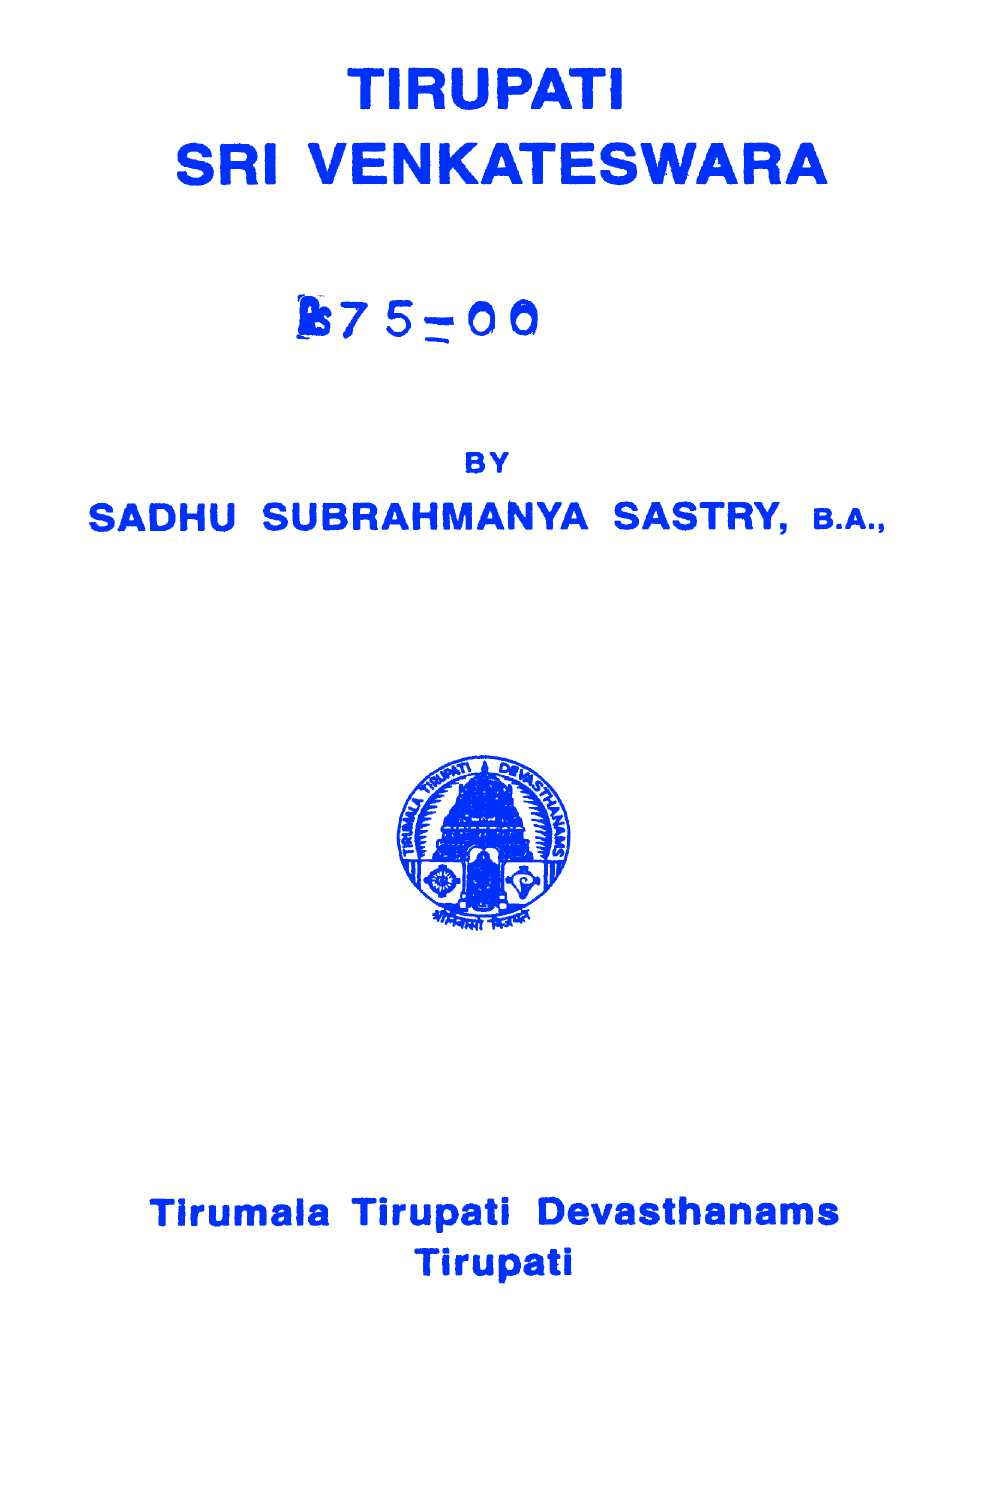 Tirupat Sri Venkateswara